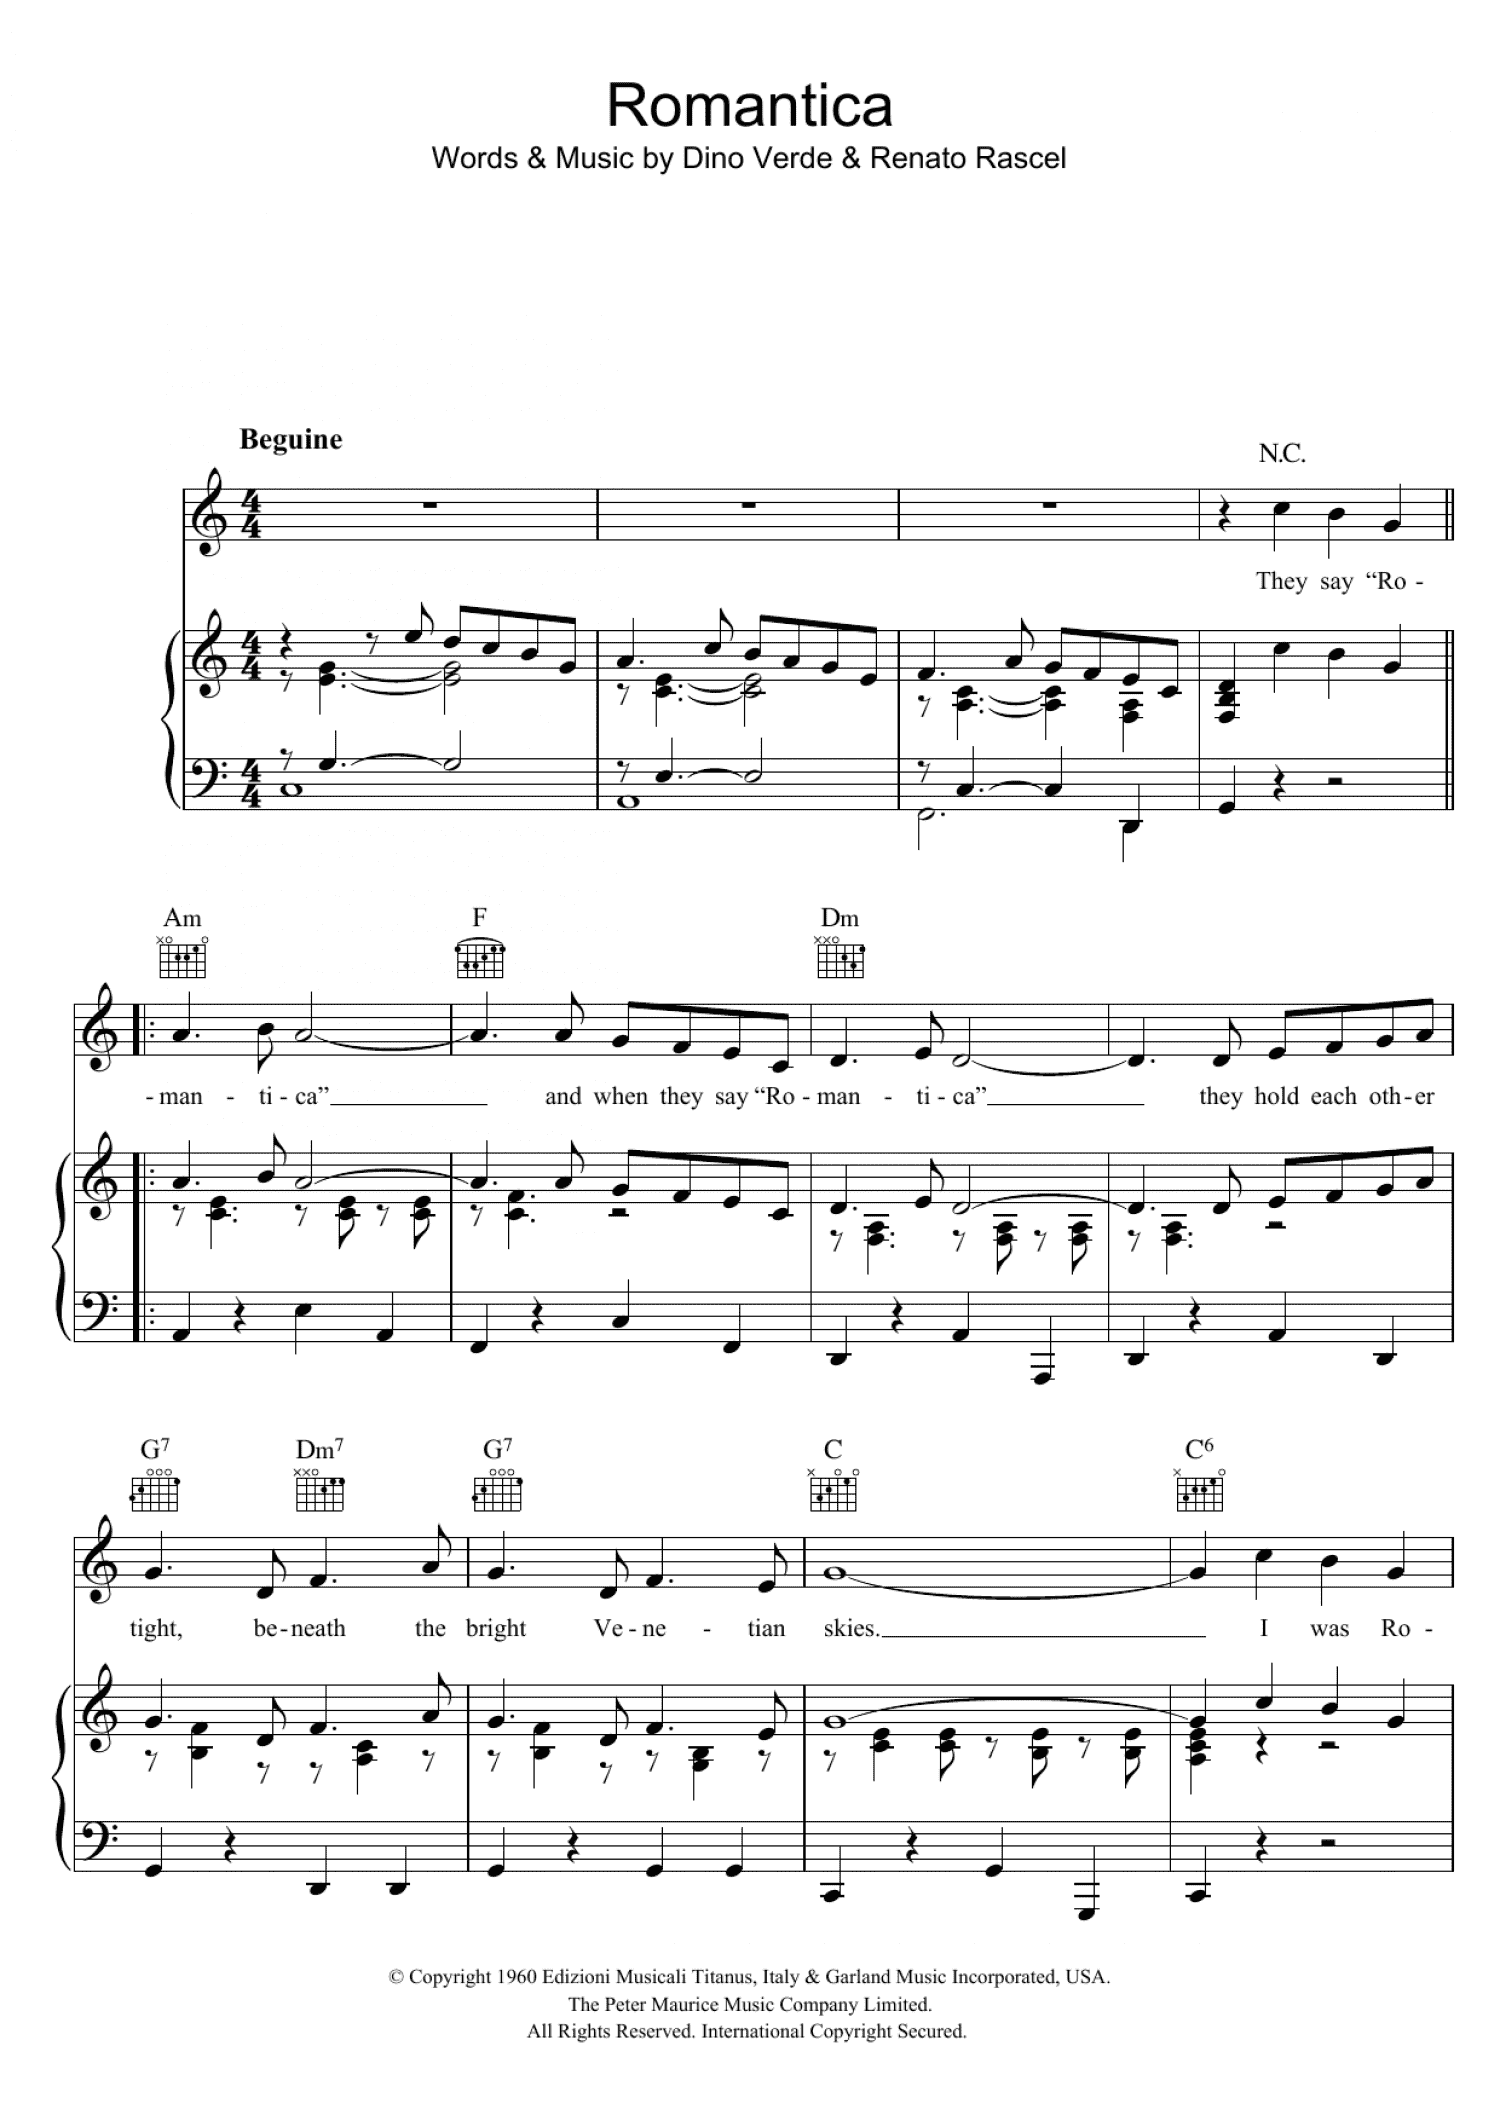 Romantica (Piano, Vocal & Guitar Chords)